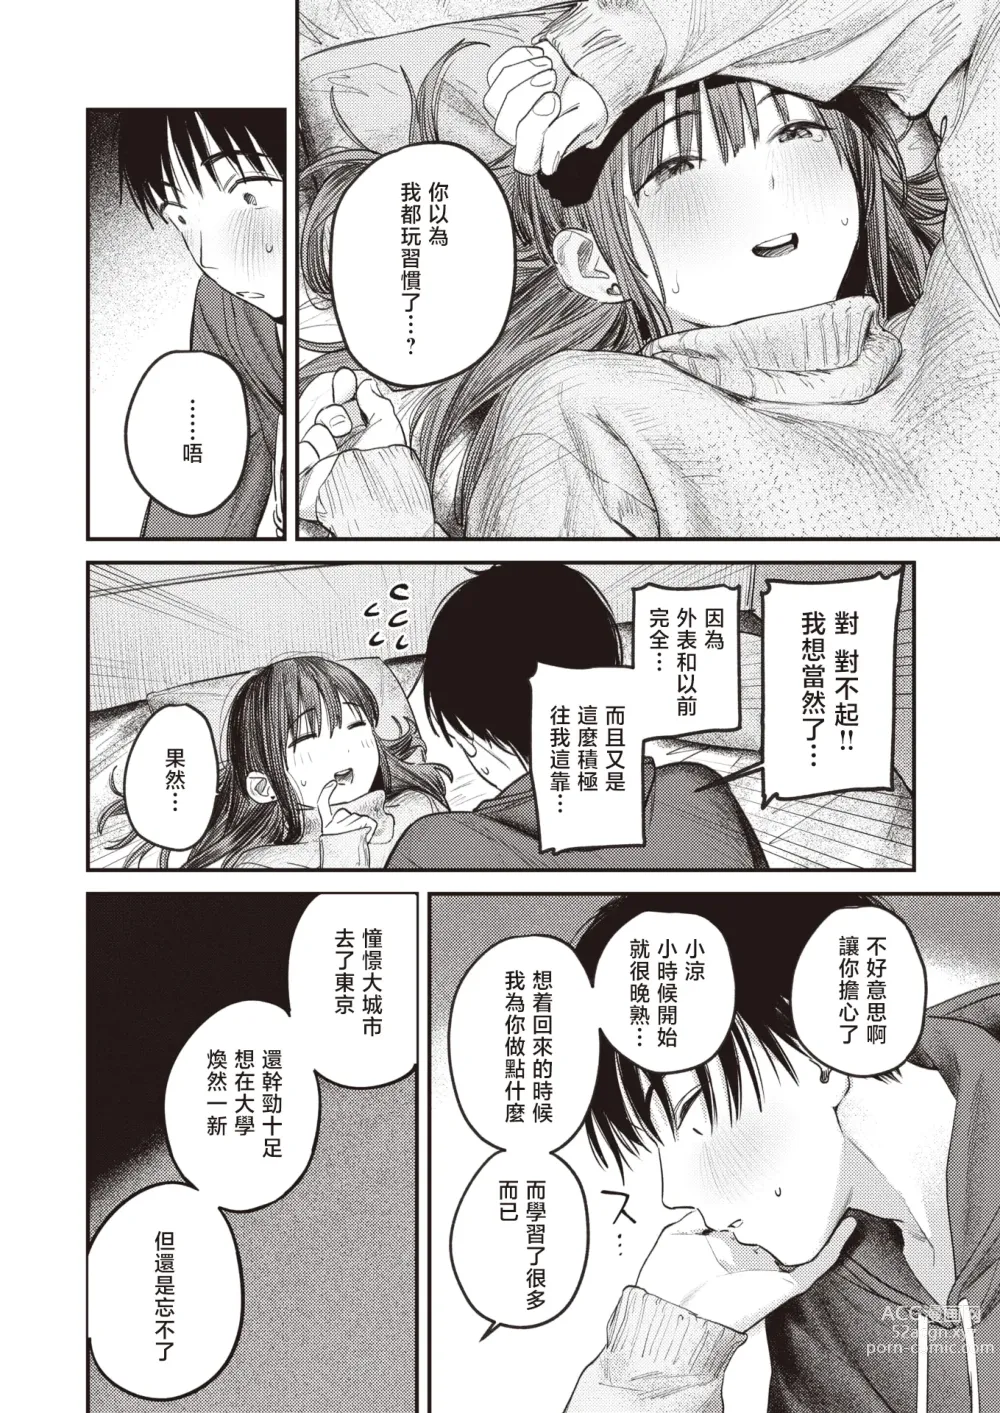 Page 19 of manga 直到雾释冰融